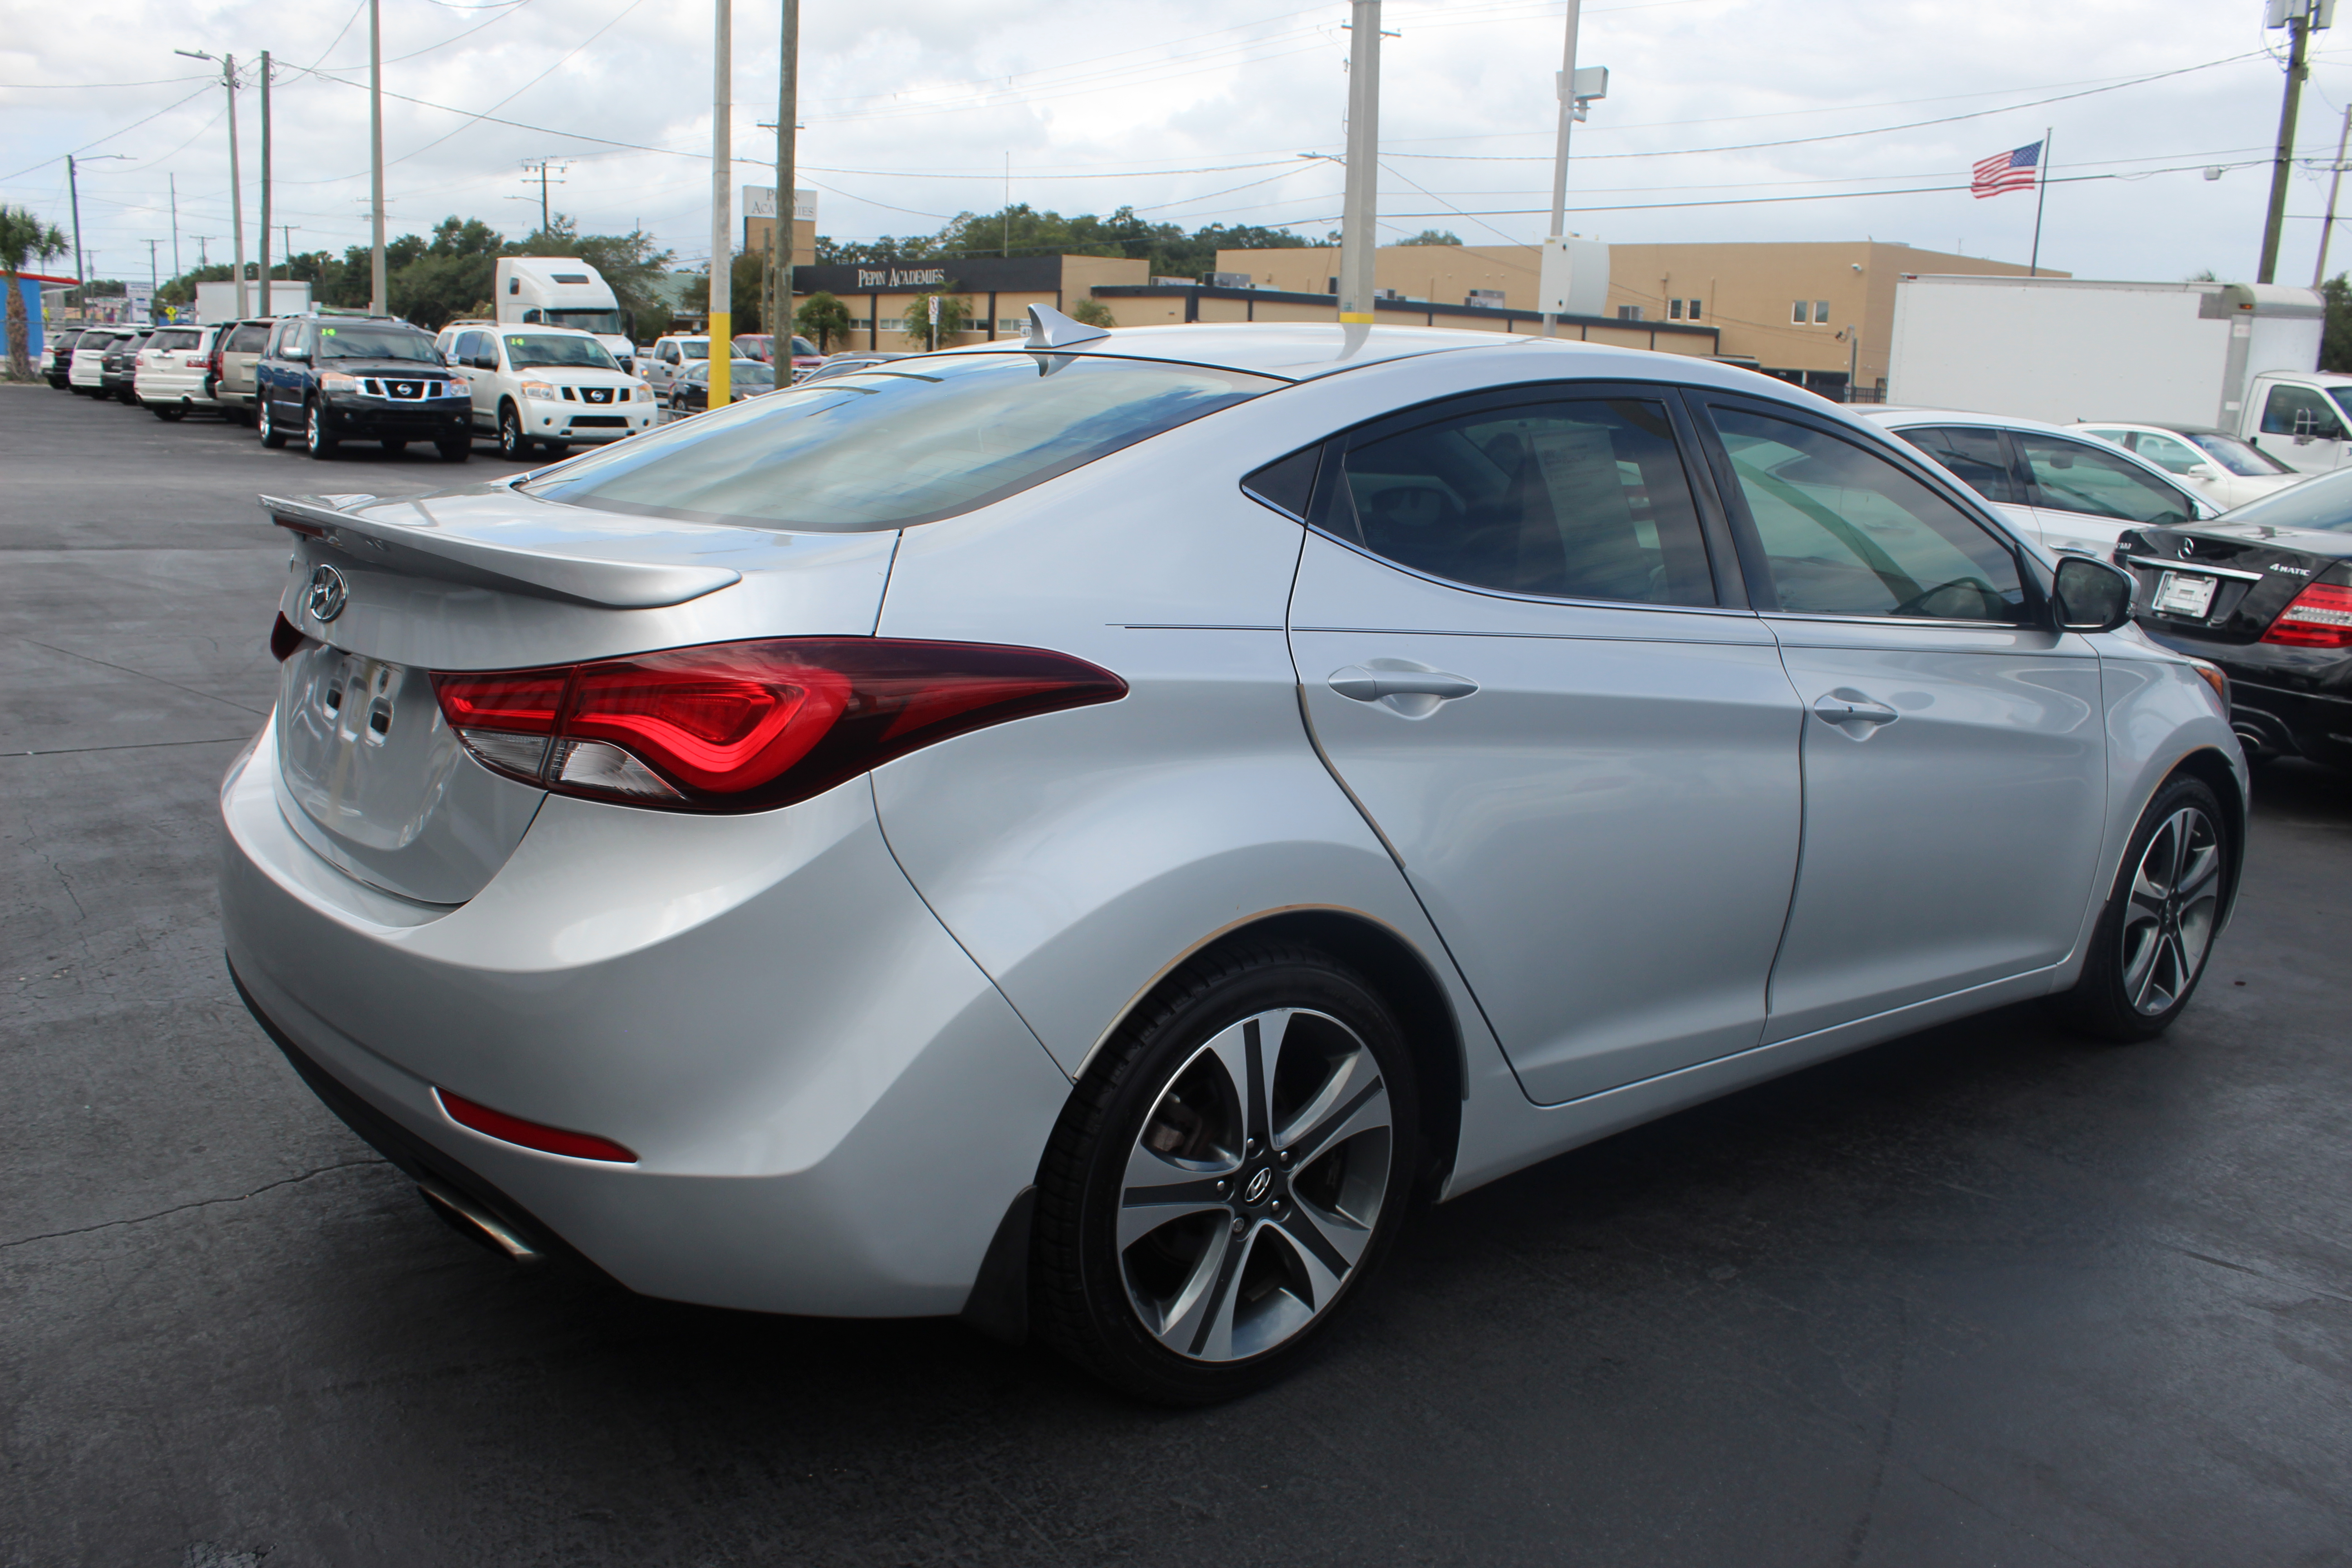 PreOwned 2015 Hyundai Elantra Sport Sedan 4 Dr. in Tampa